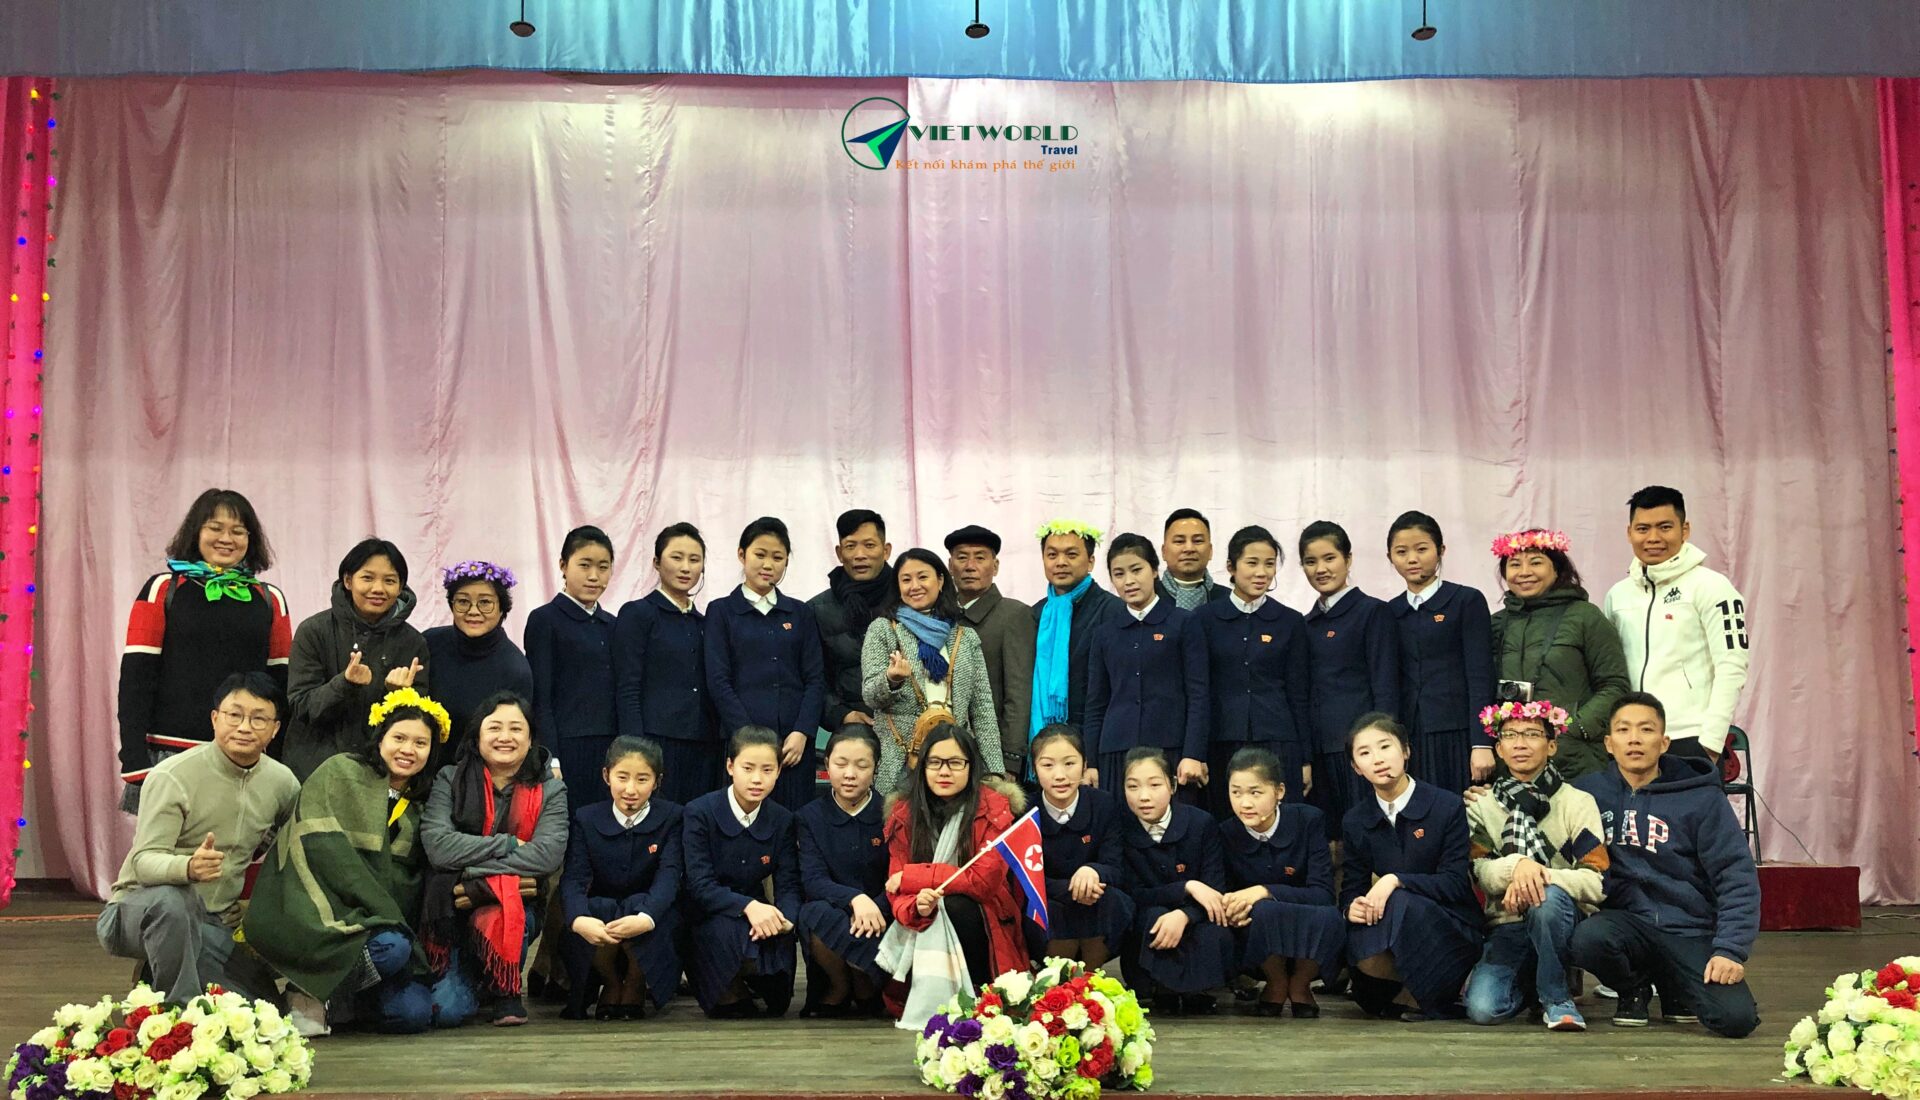 Trang phục học sinh Triều Tiên